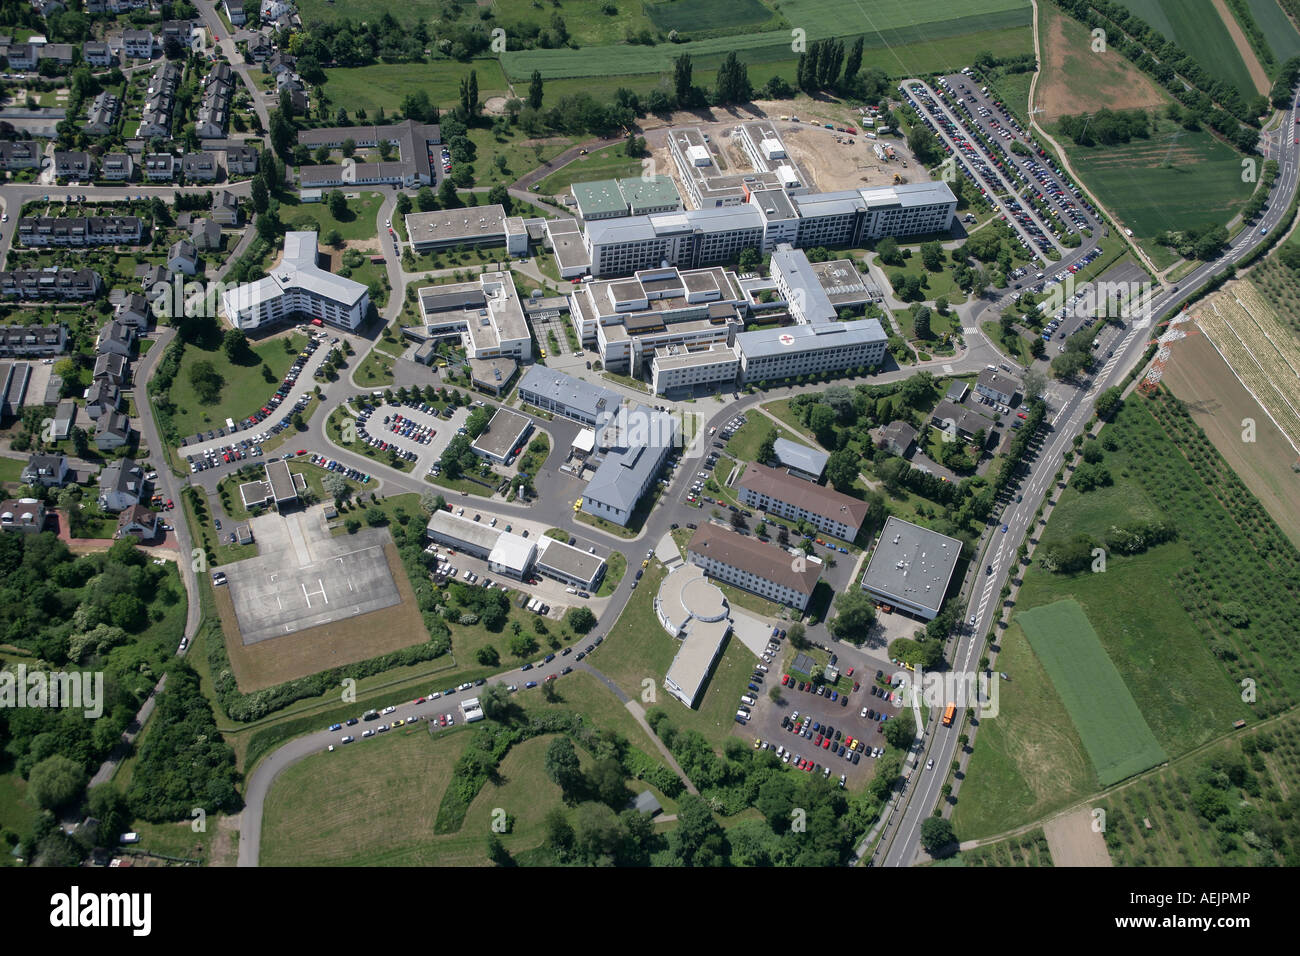 L'hôpital militaire central de l'armée fédérale allemande de Coblence Coblence, Rhénanie-Palatinat Allemagne Europe Banque D'Images